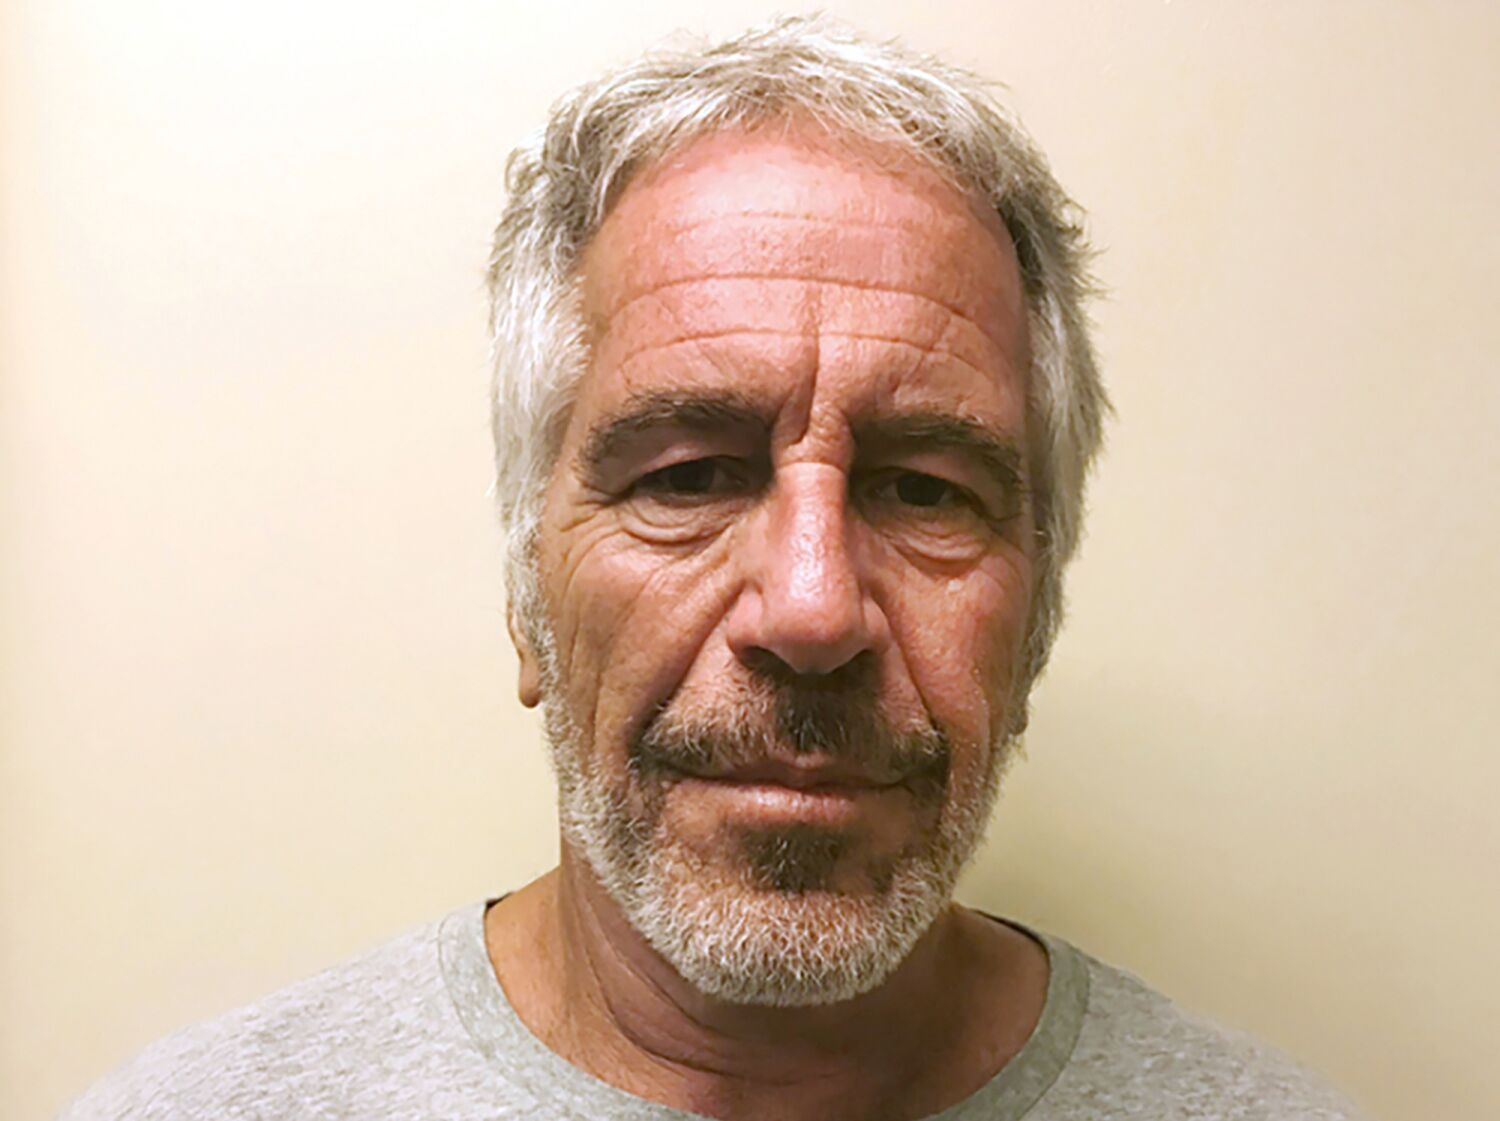 Watchdog raporu, Epstein'ın öldüğü NY hapishanesinde ihmal ve görevi kötüye kullandığını gösteriyor